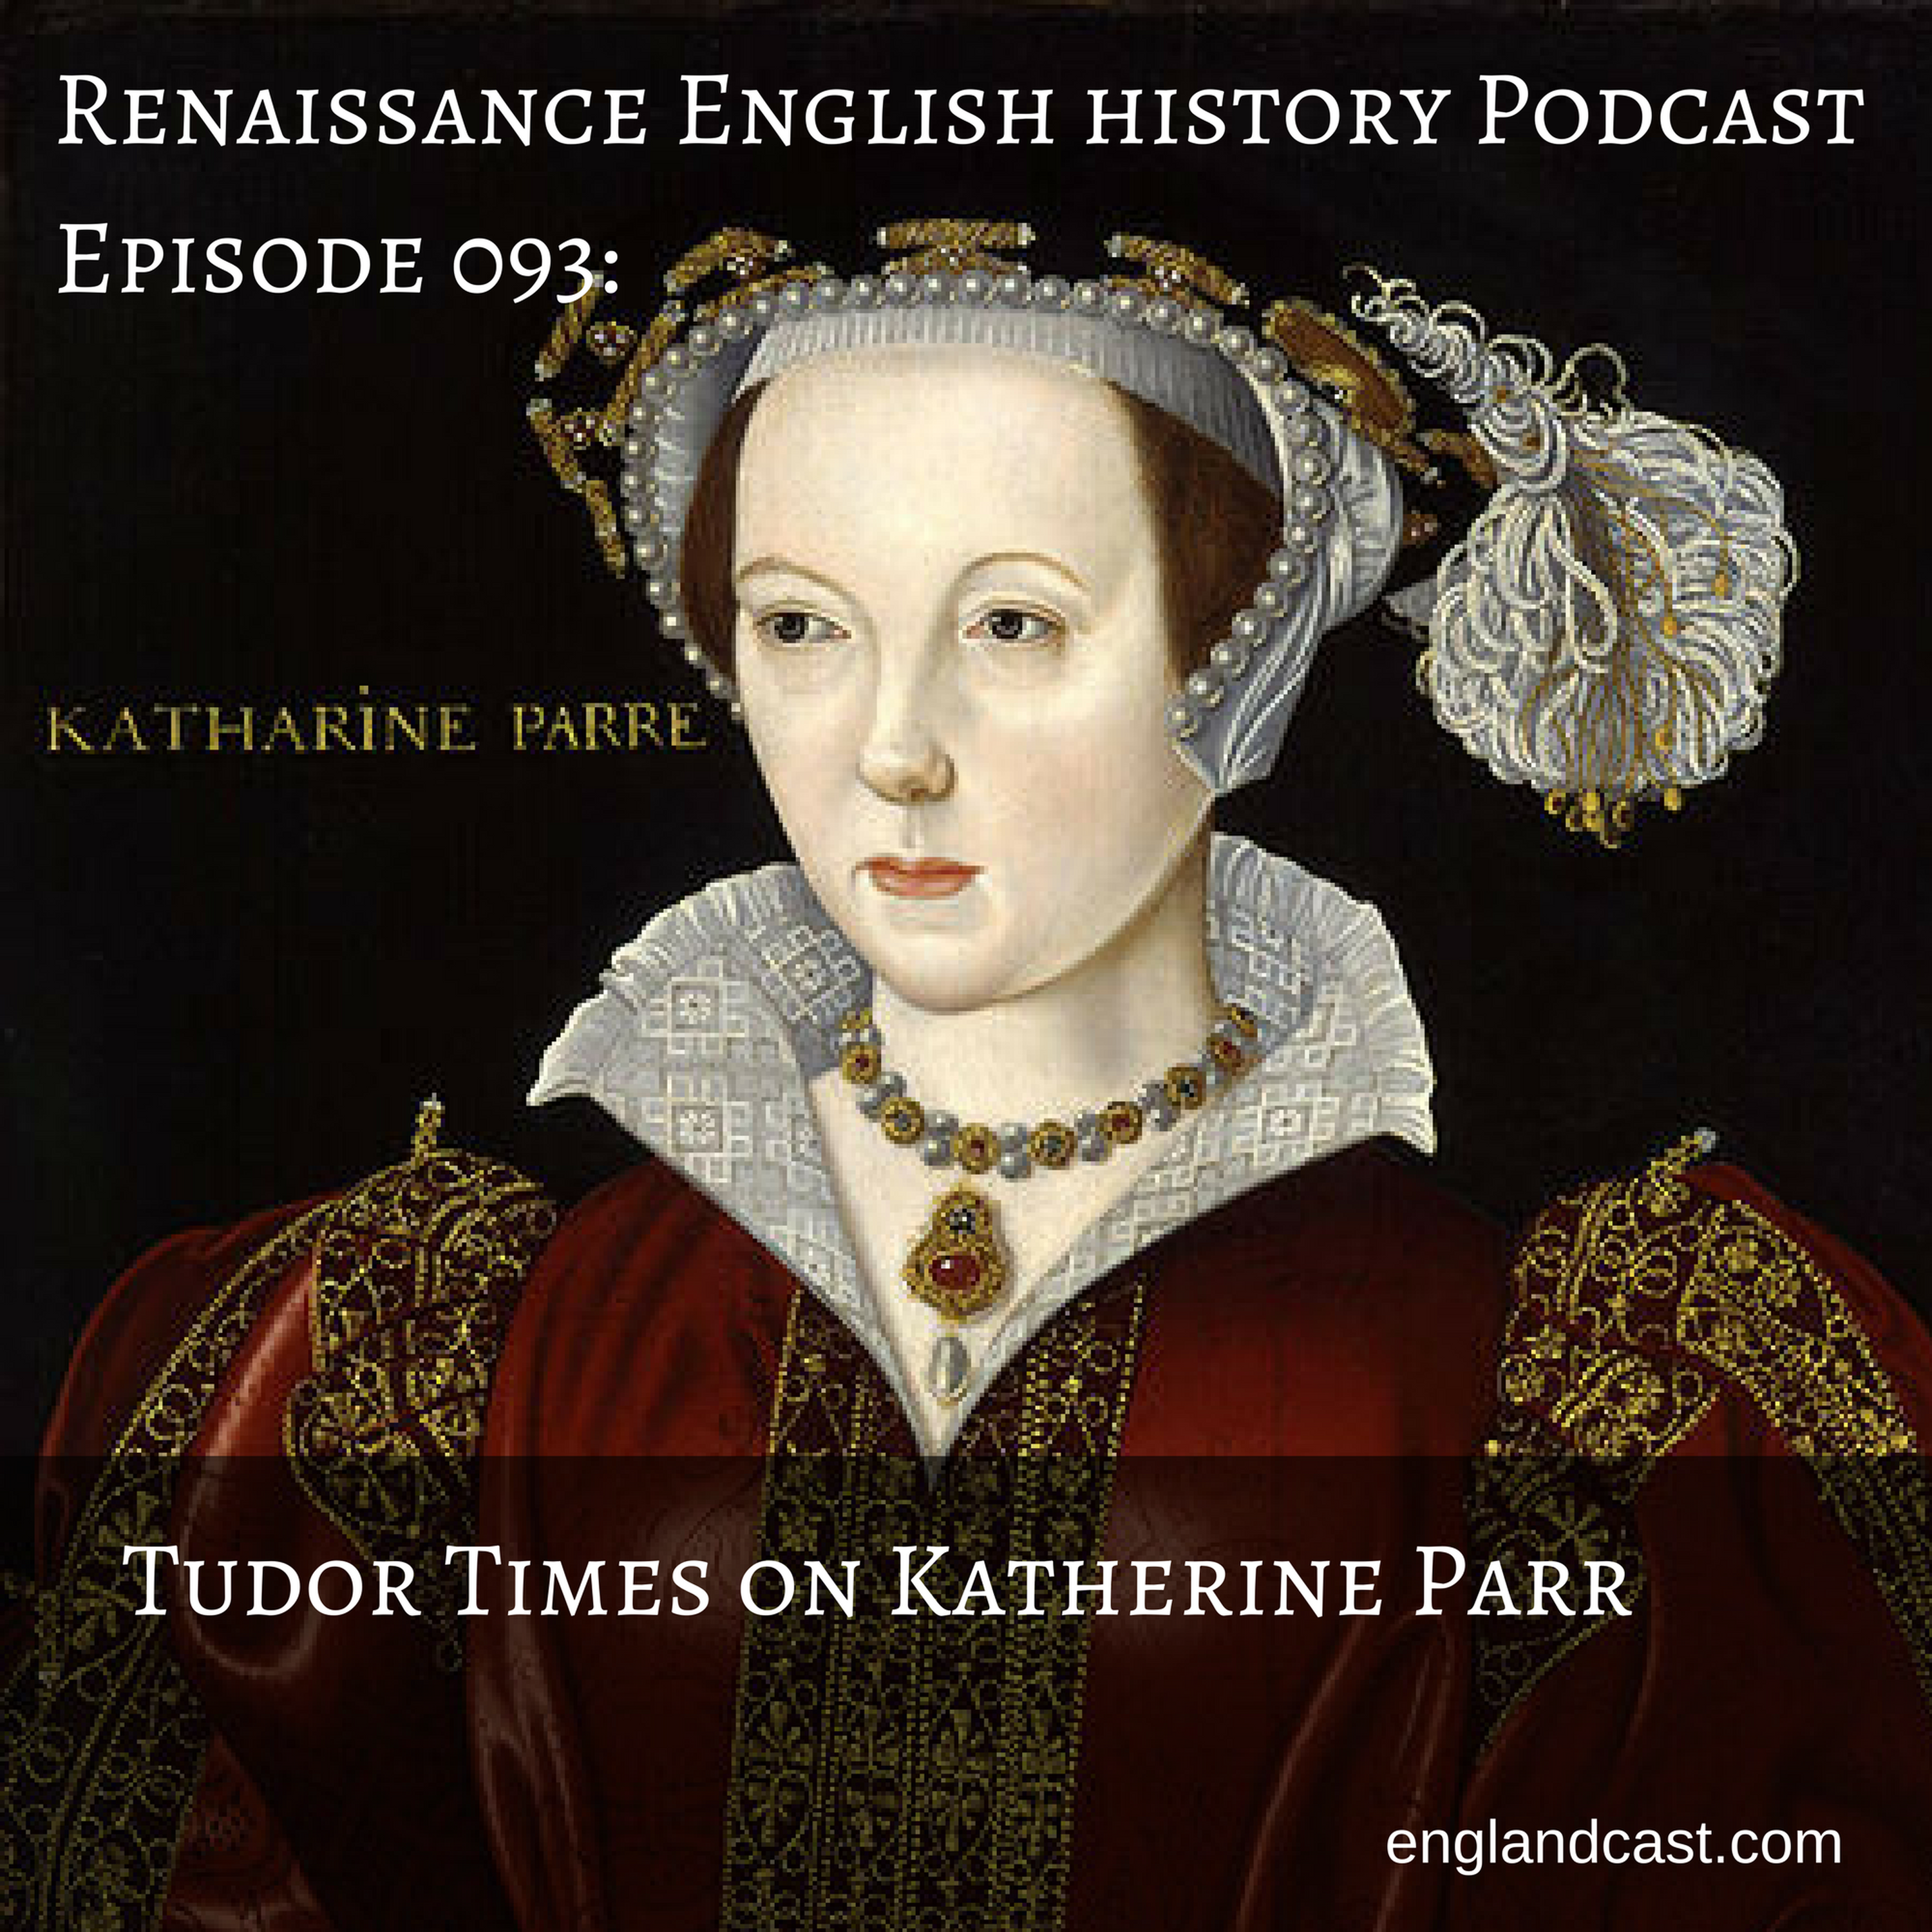 Episode 093: Tudor Times on Katherine Parr